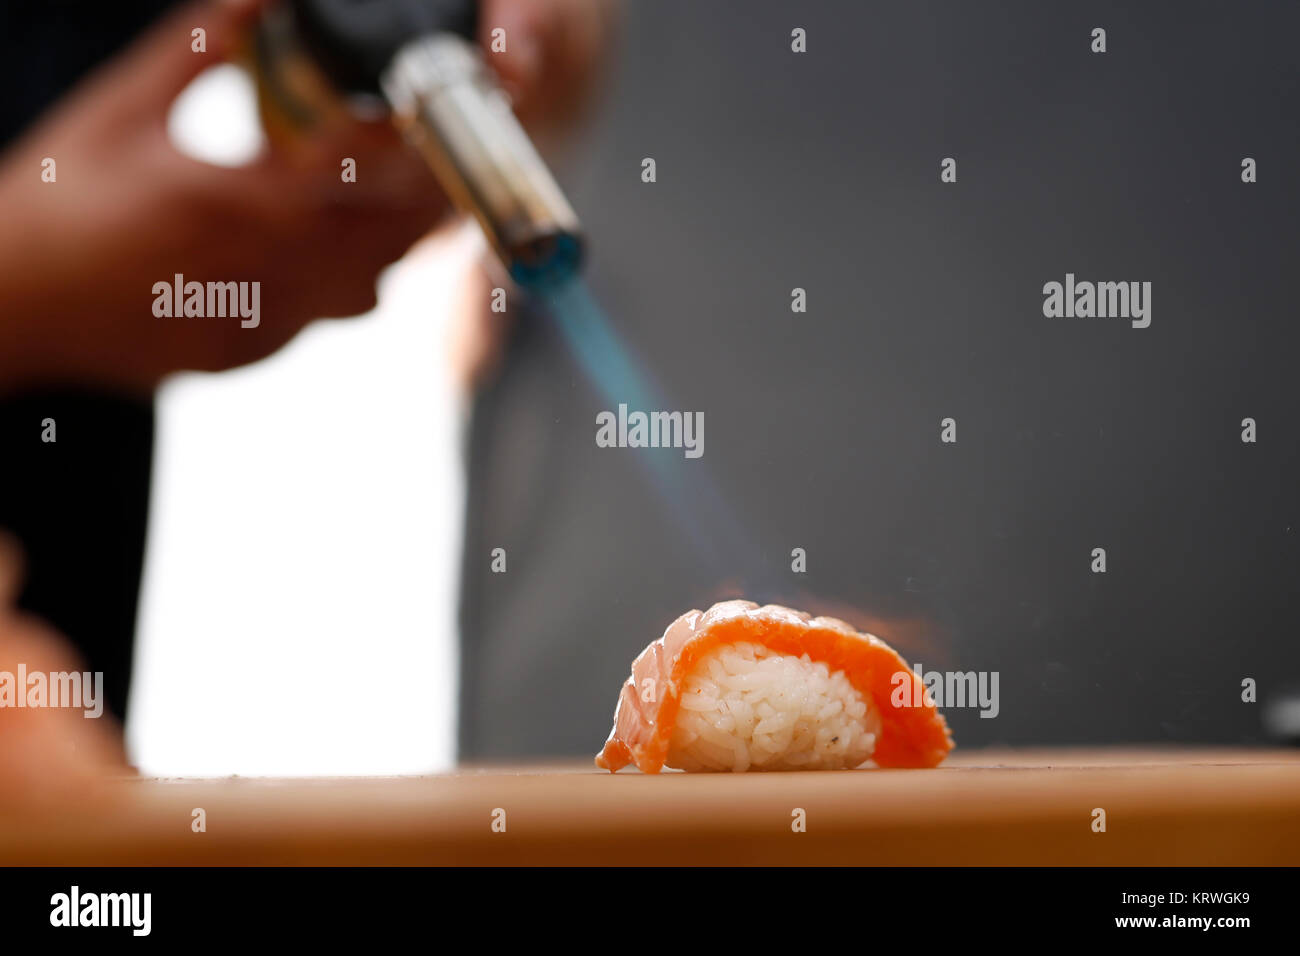 Sushi z surowym Å‚ososiem opalane pÅ‚omieniem. Porcja ryÅ¼u uformowanego w kulkÄ™ przykrytego kawaÅ‚kiem ryby Stock Photo